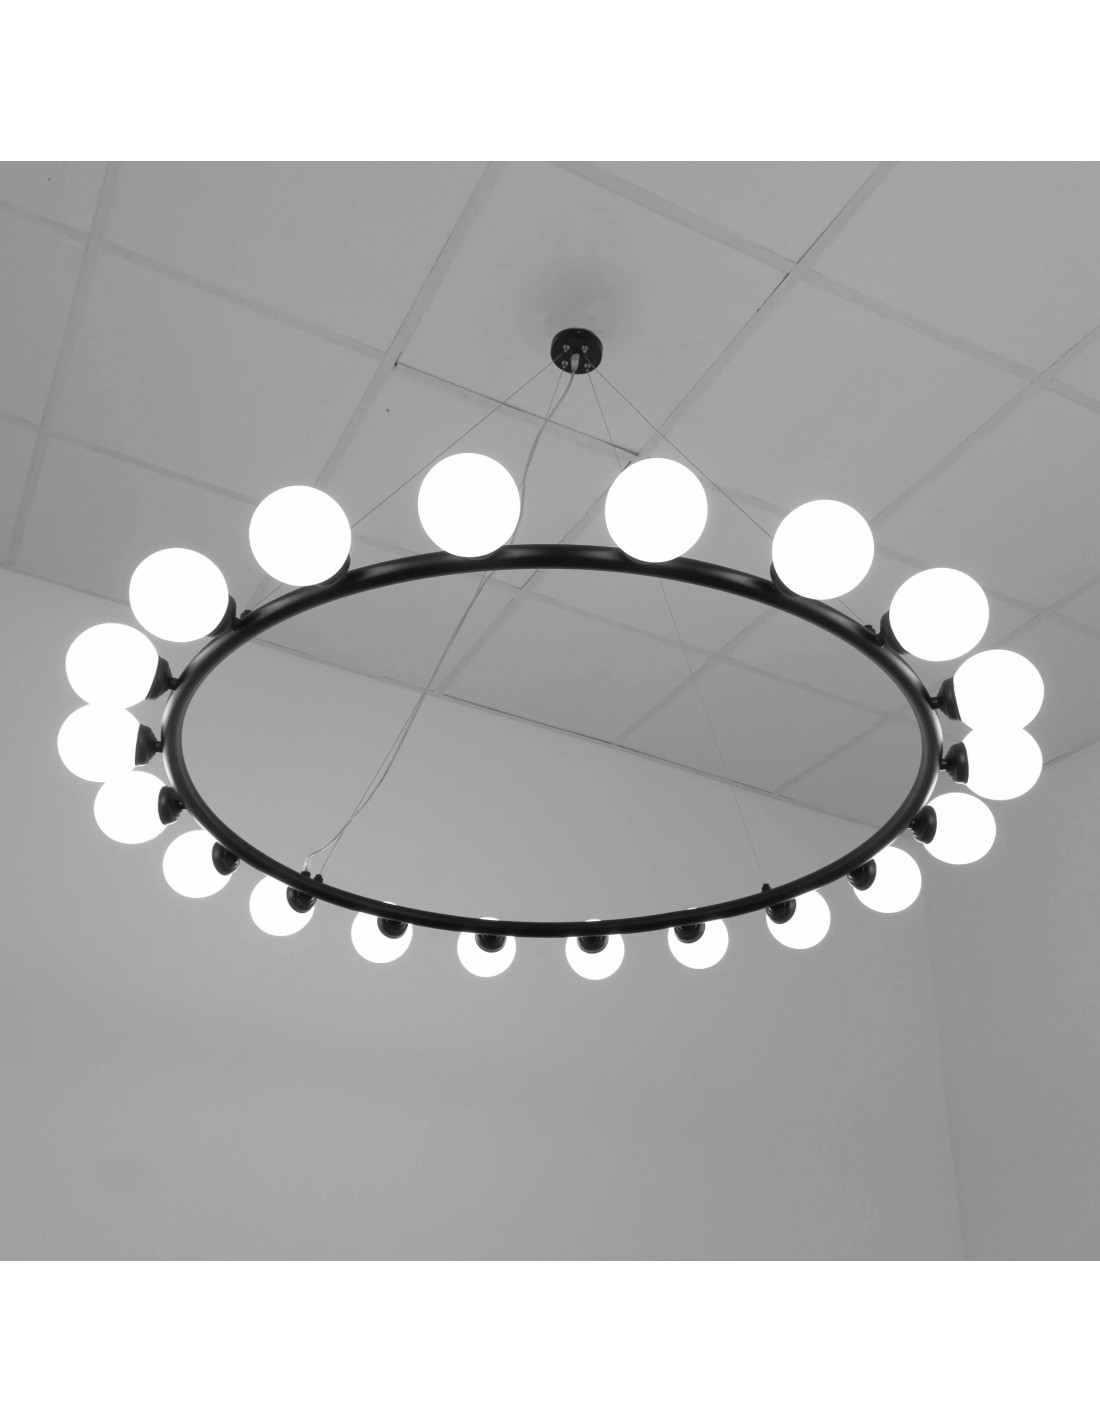 lámparas de techo cierta inspiración minimalista con un diseño muy elegante